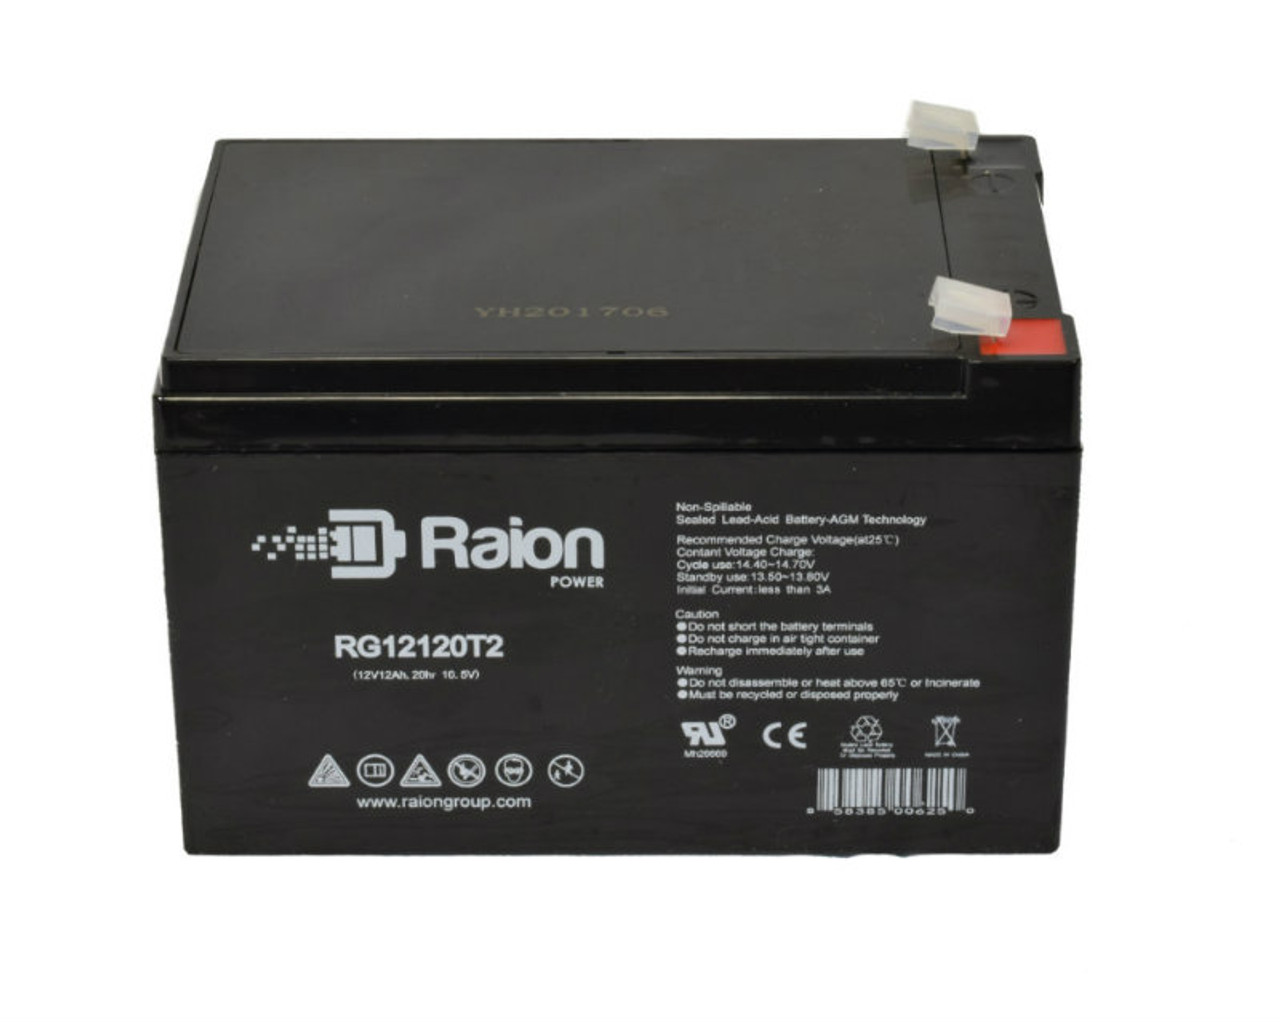 Raion Power RG12120T2 SLA Battery for Amptek AT12-12